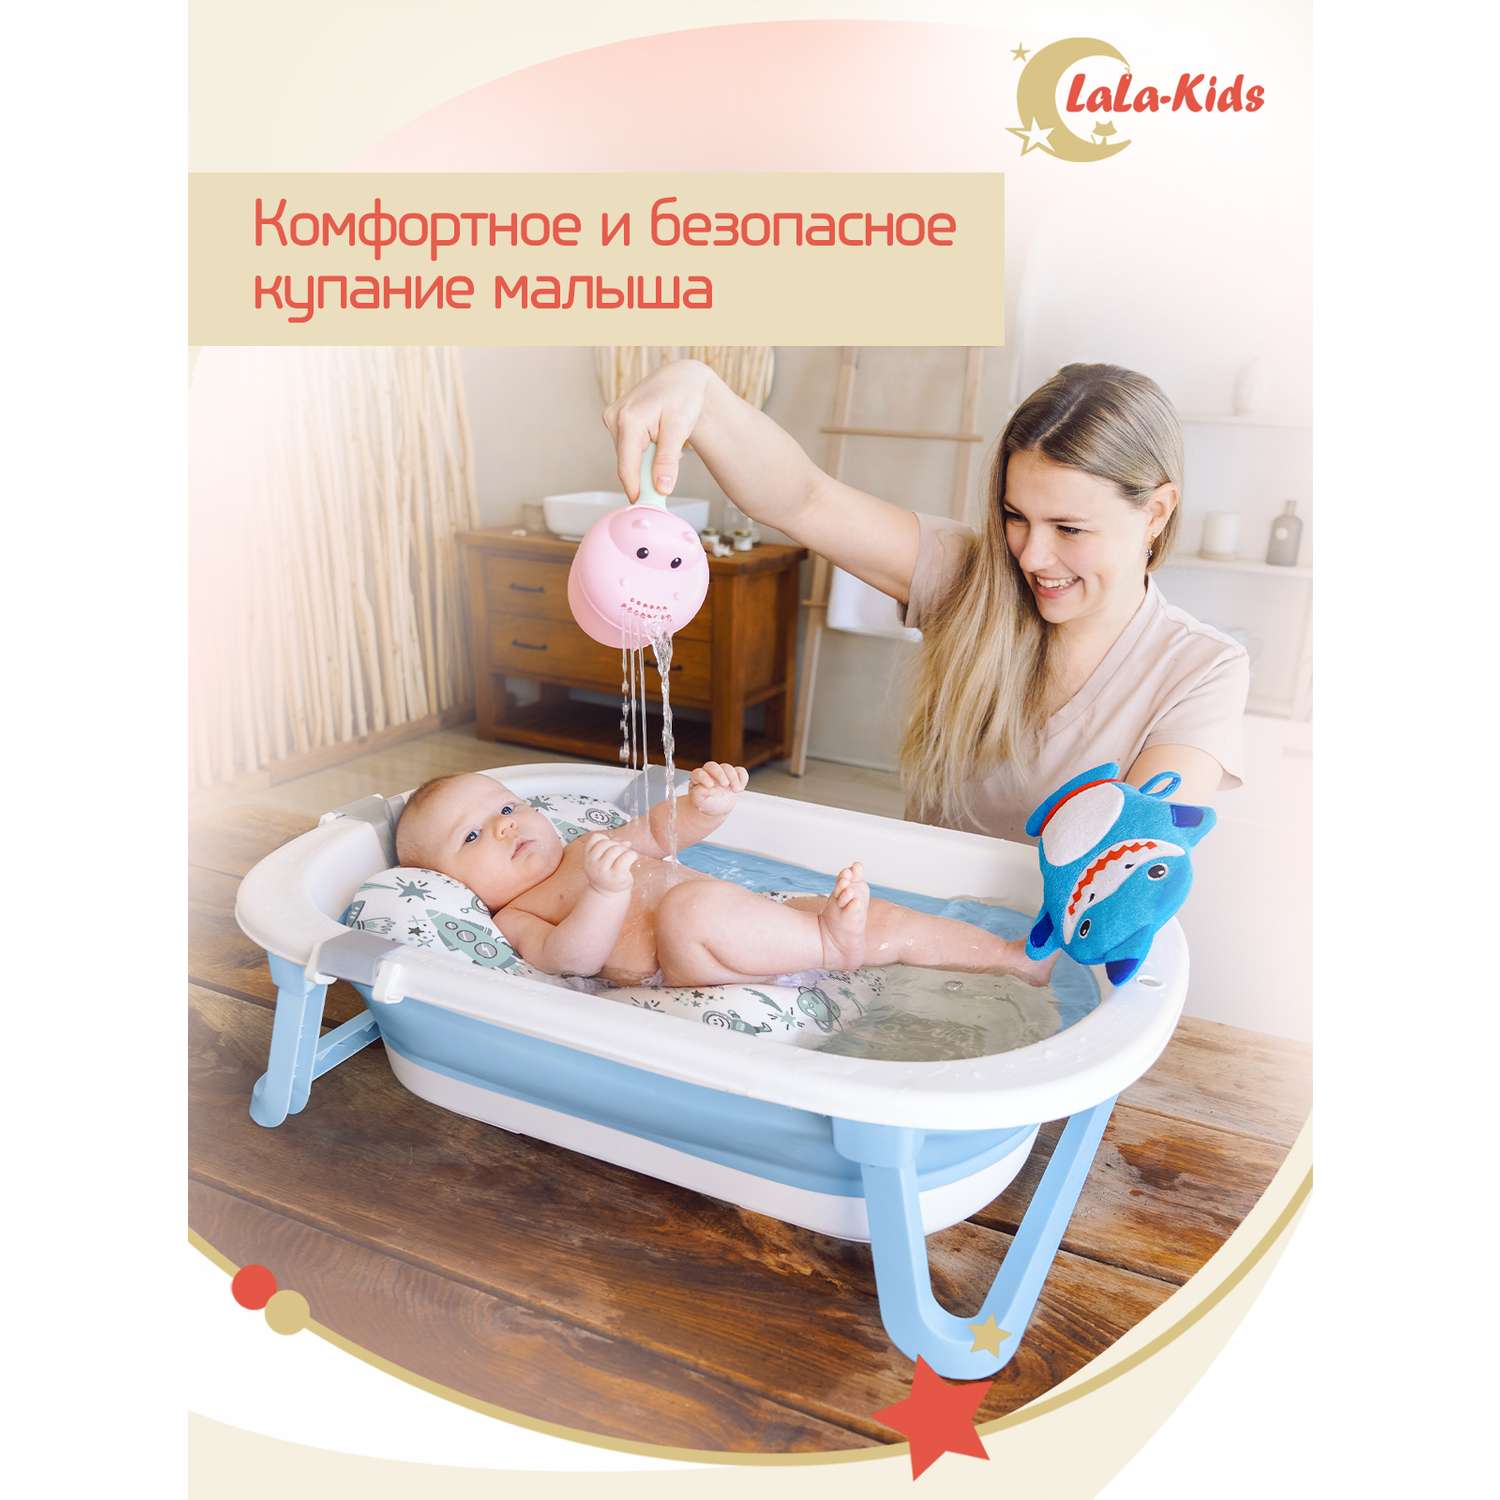 Детская ванночка складная LaLa-Kids для купания новорожденных с термометром - фото 2